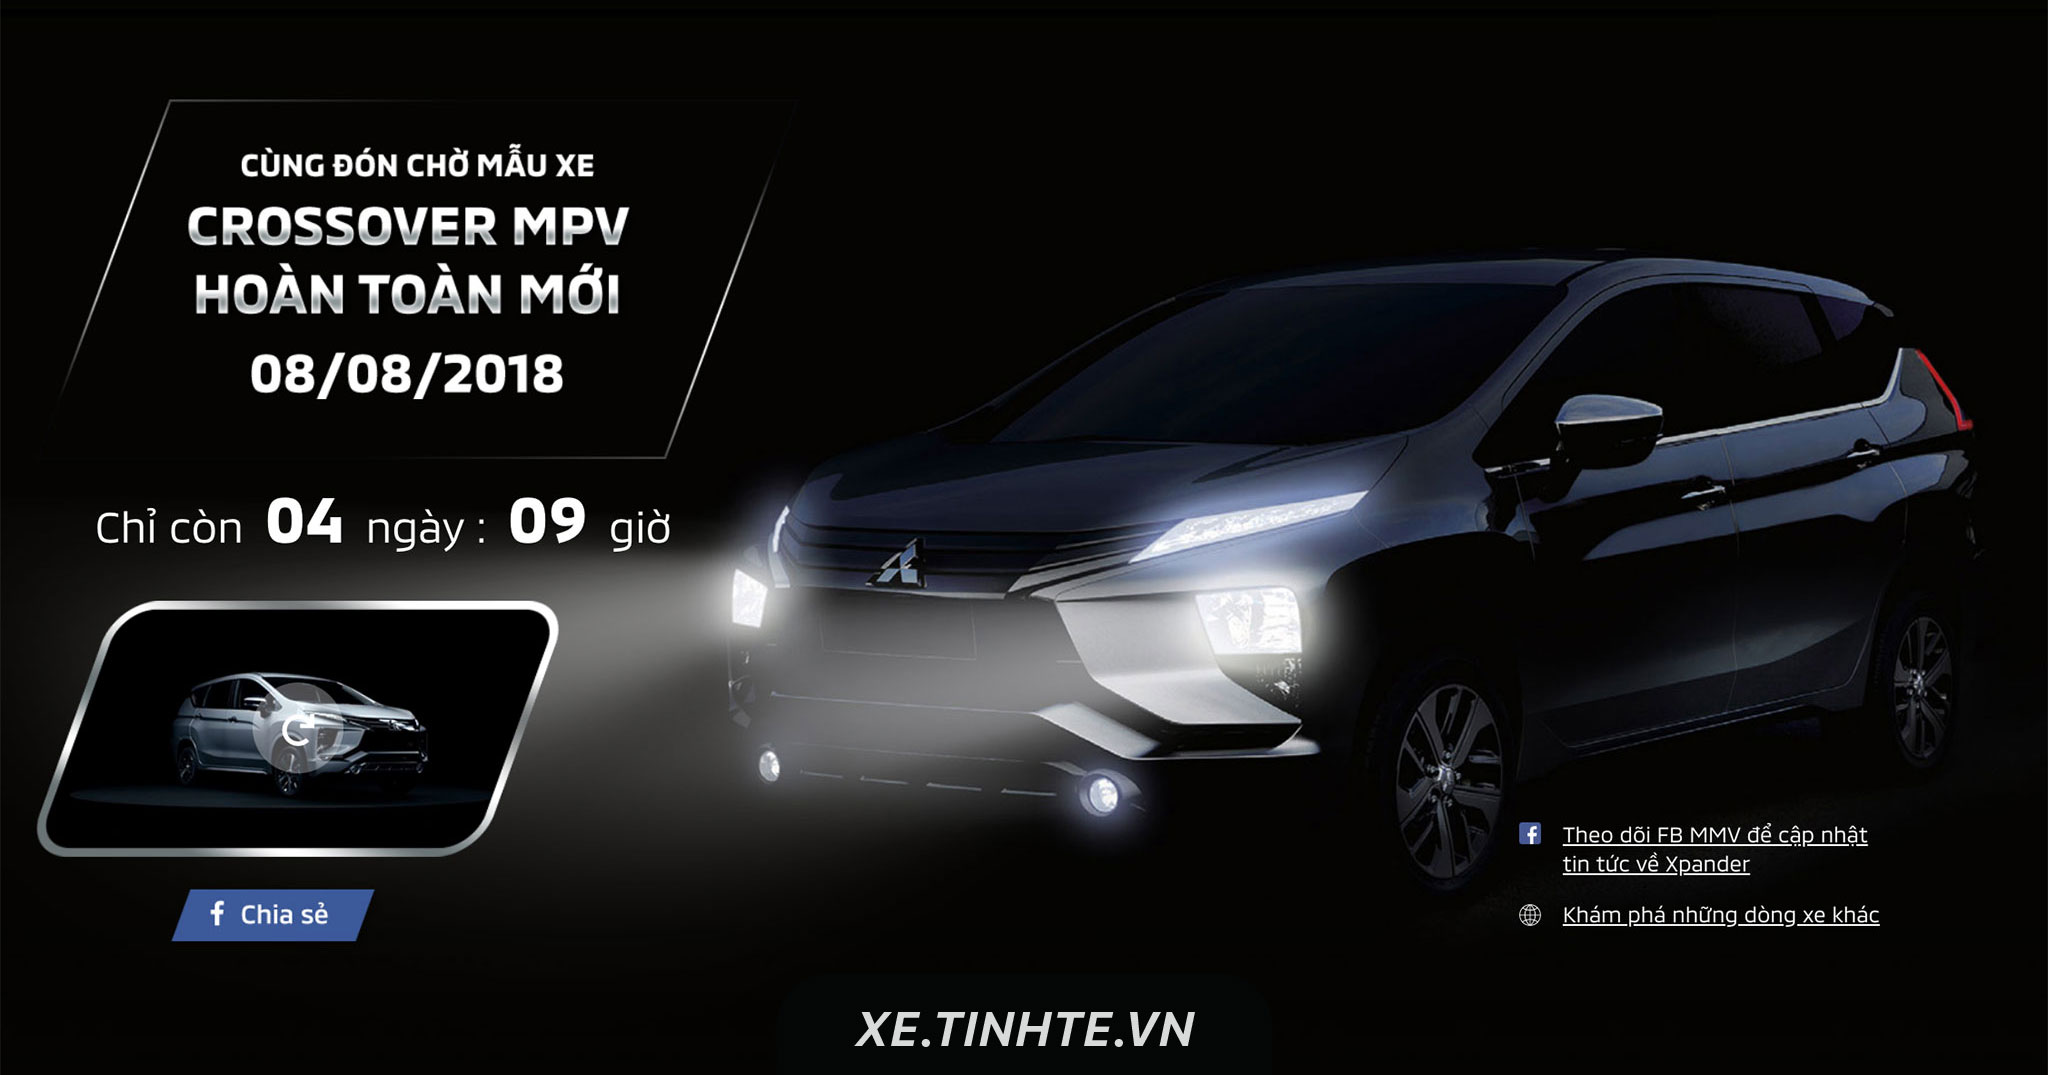 [Video] Mitsubishi hé lộ sẽ ra mắt Xpander 7 chỗ ngồi tại Việt Nam, dự kiến 8/8